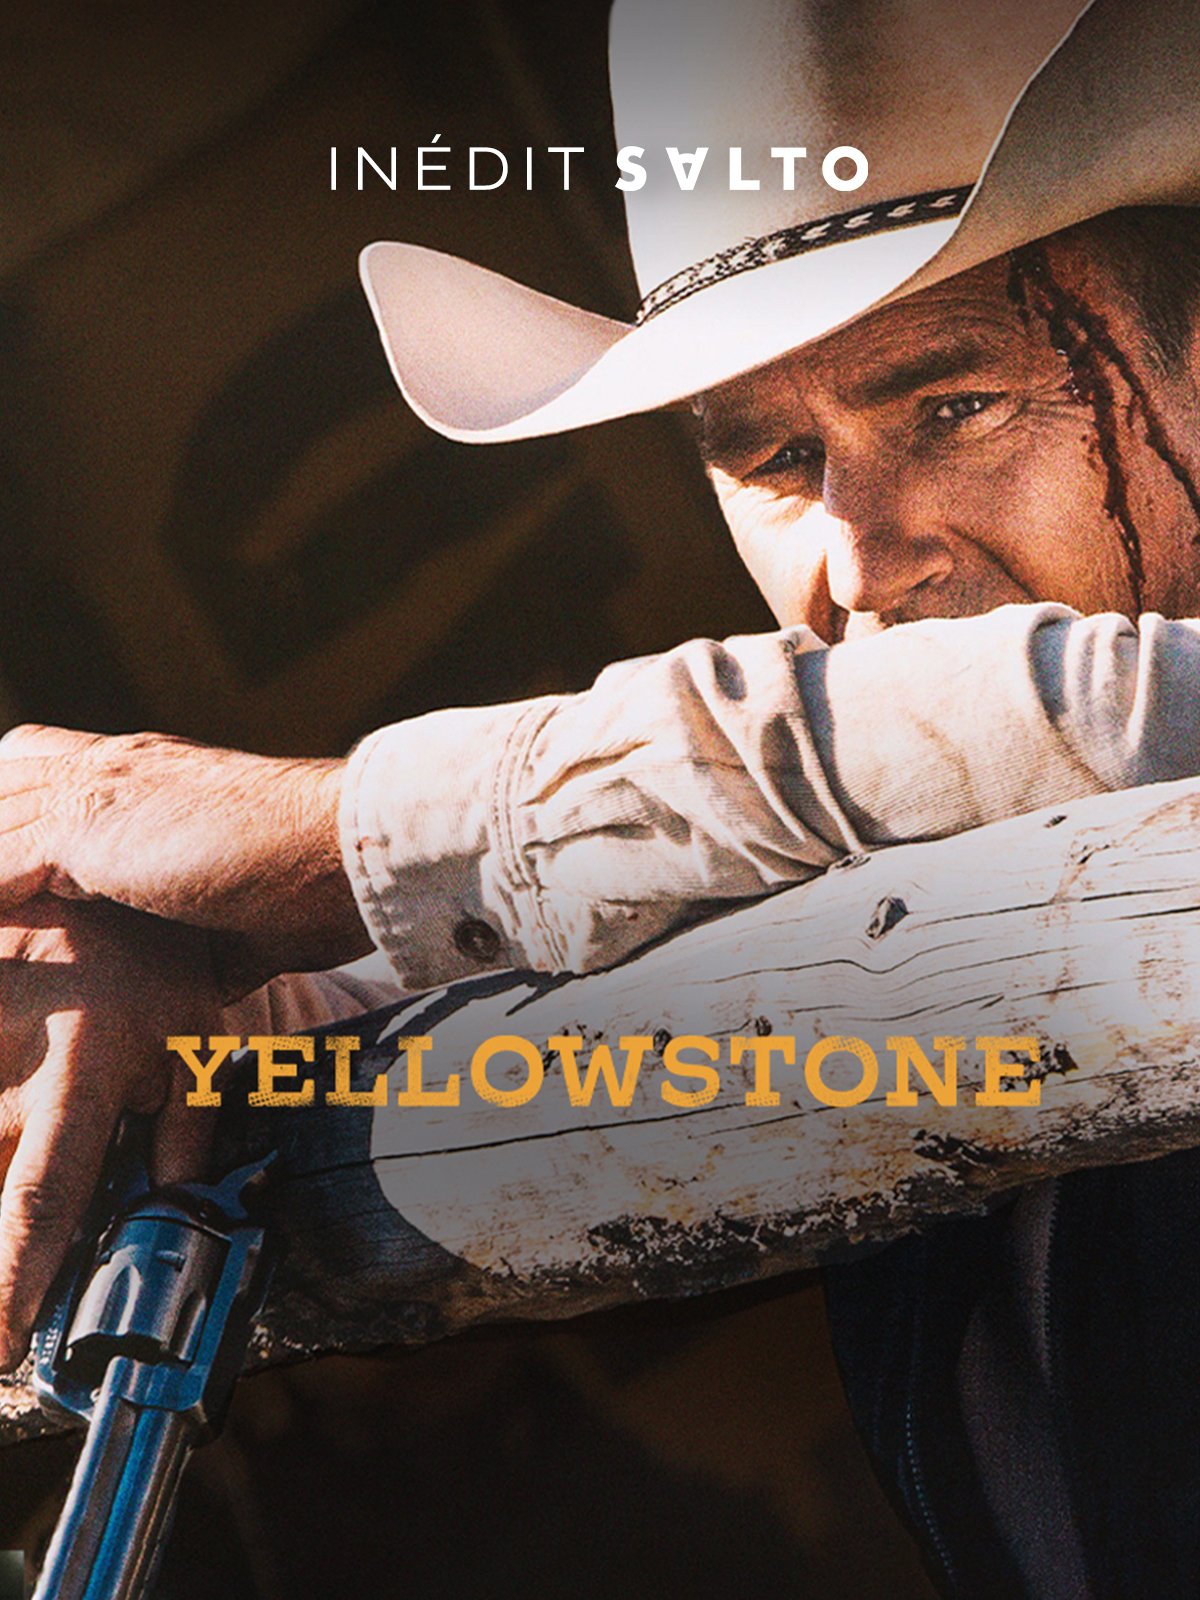 Yellowstone - Saison 3